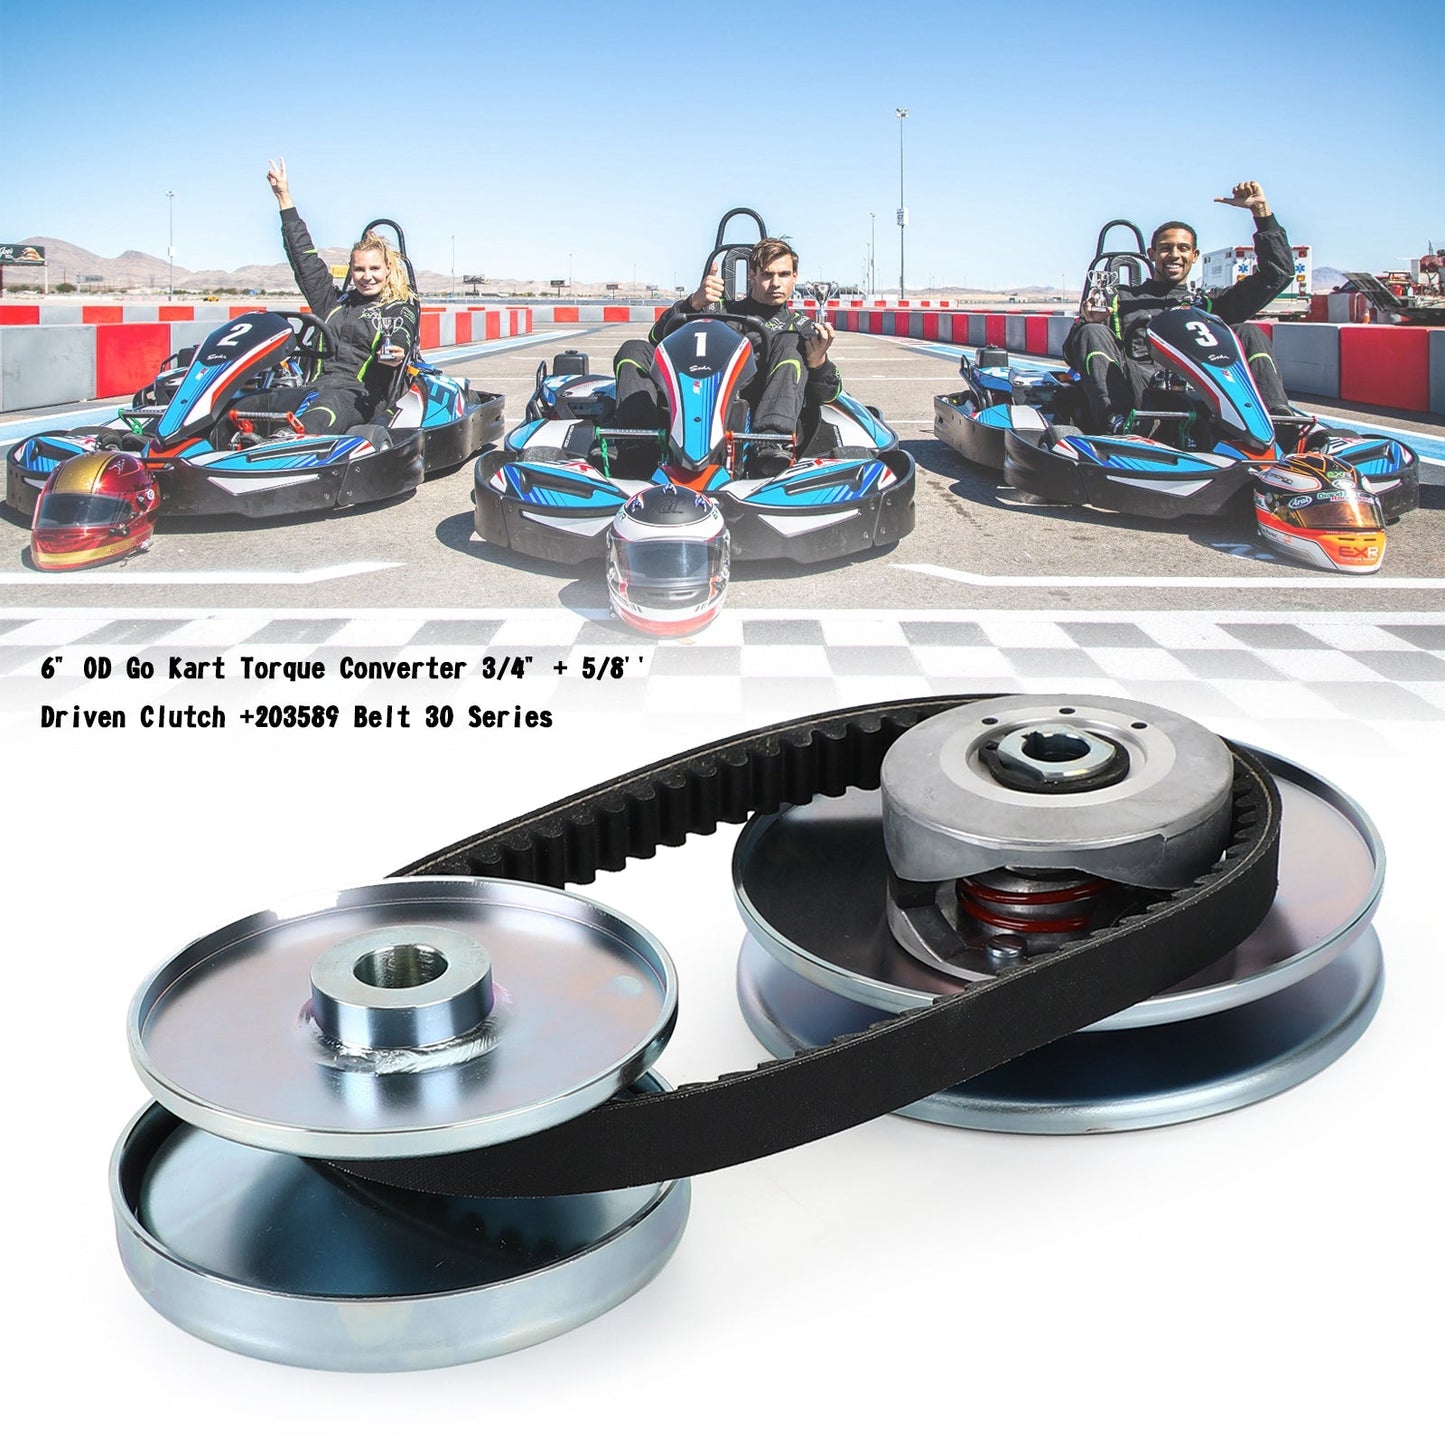 6" OD Go Kart Torque Converter 3/4" + 5/8'' Driven Clutch +203589 Belt 30 Series